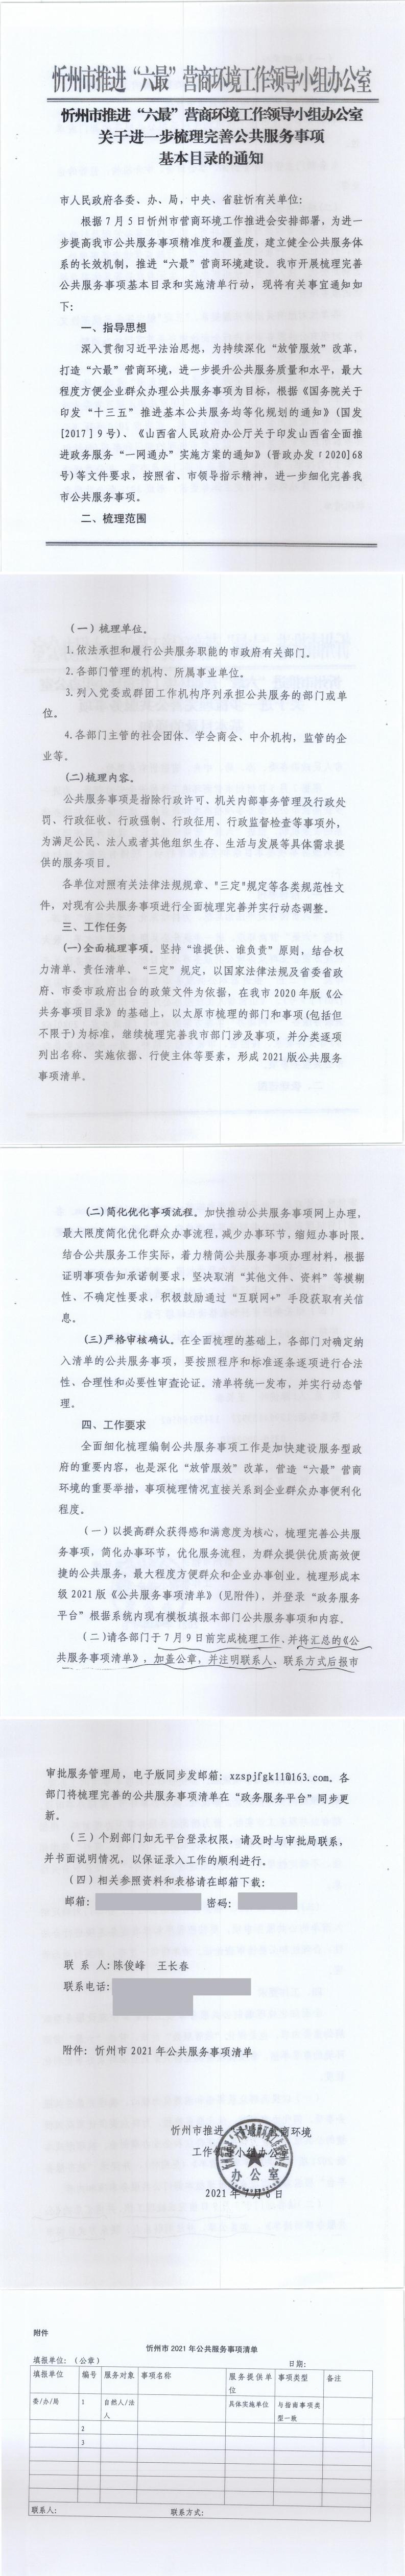 210706（1）-忻州市推进“六最”营商环境工作领导小组办公室关于进一步梳理完善公共服务事项基本目录的通知_0.jpg